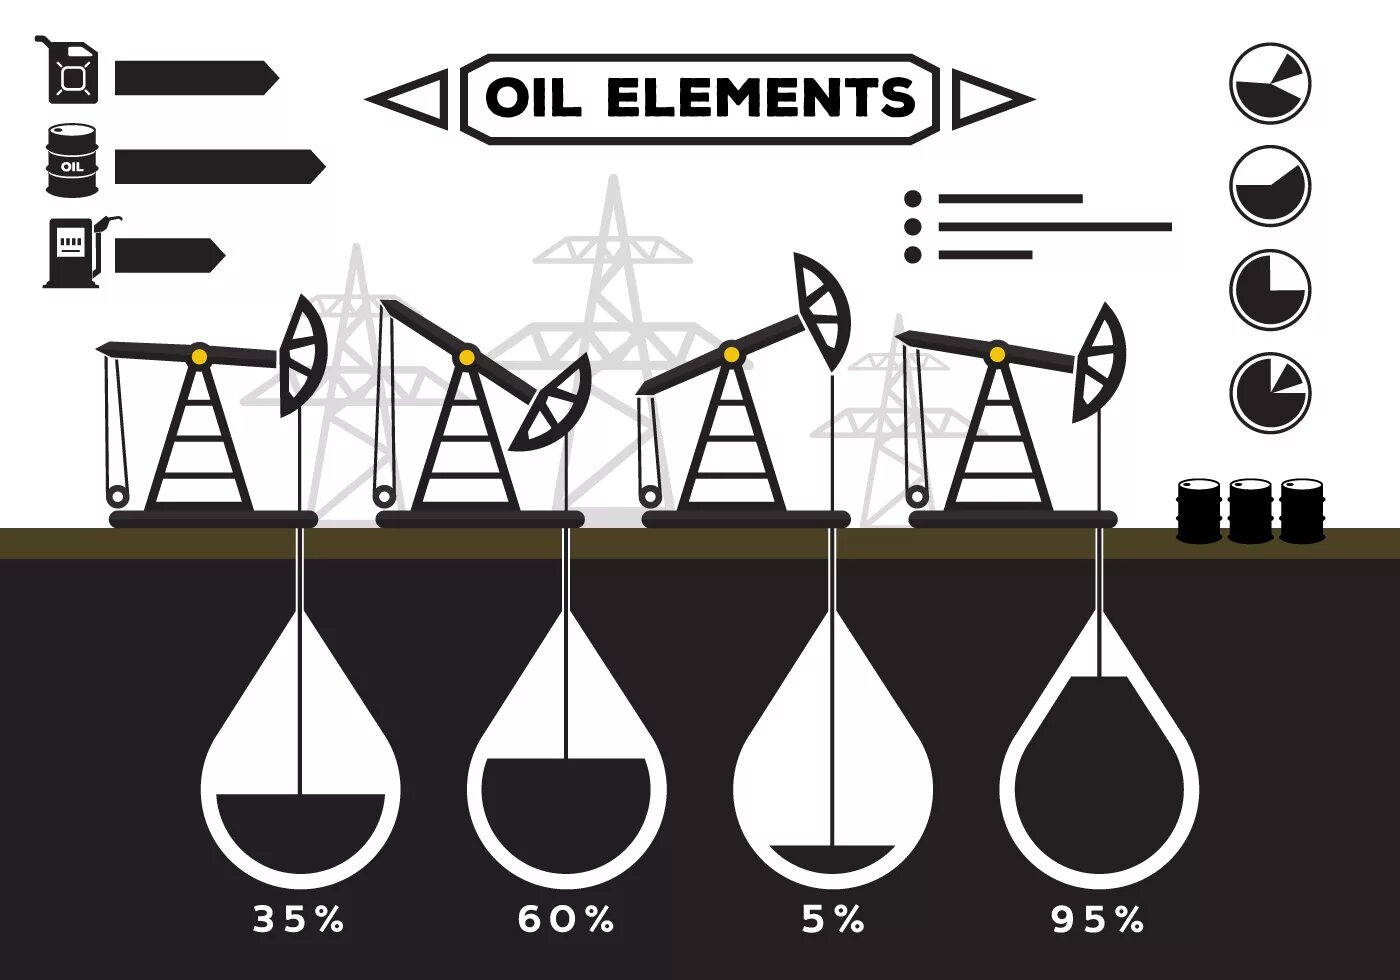 Значок месторождения нефти